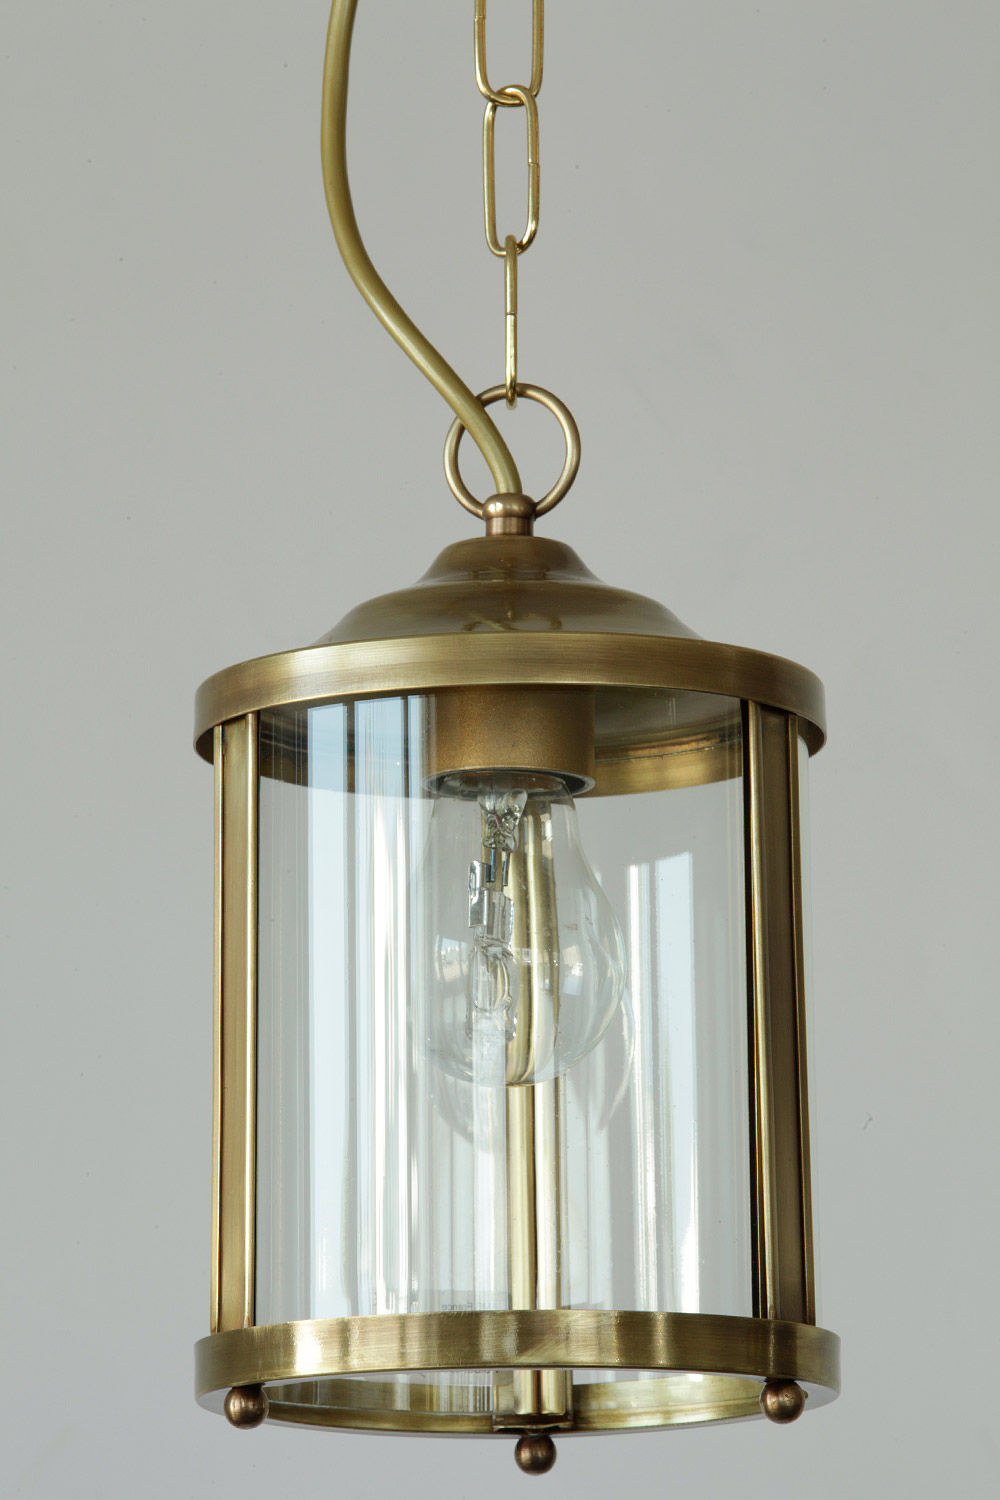 Kleine Rundglas-Laterne: Französische Pendelleuchte Ø 14 cm: Kleine Hänge-Laterne aus Frankreich, aus Glasstreifen und Messing oder Kupfer von Hand gefertigt